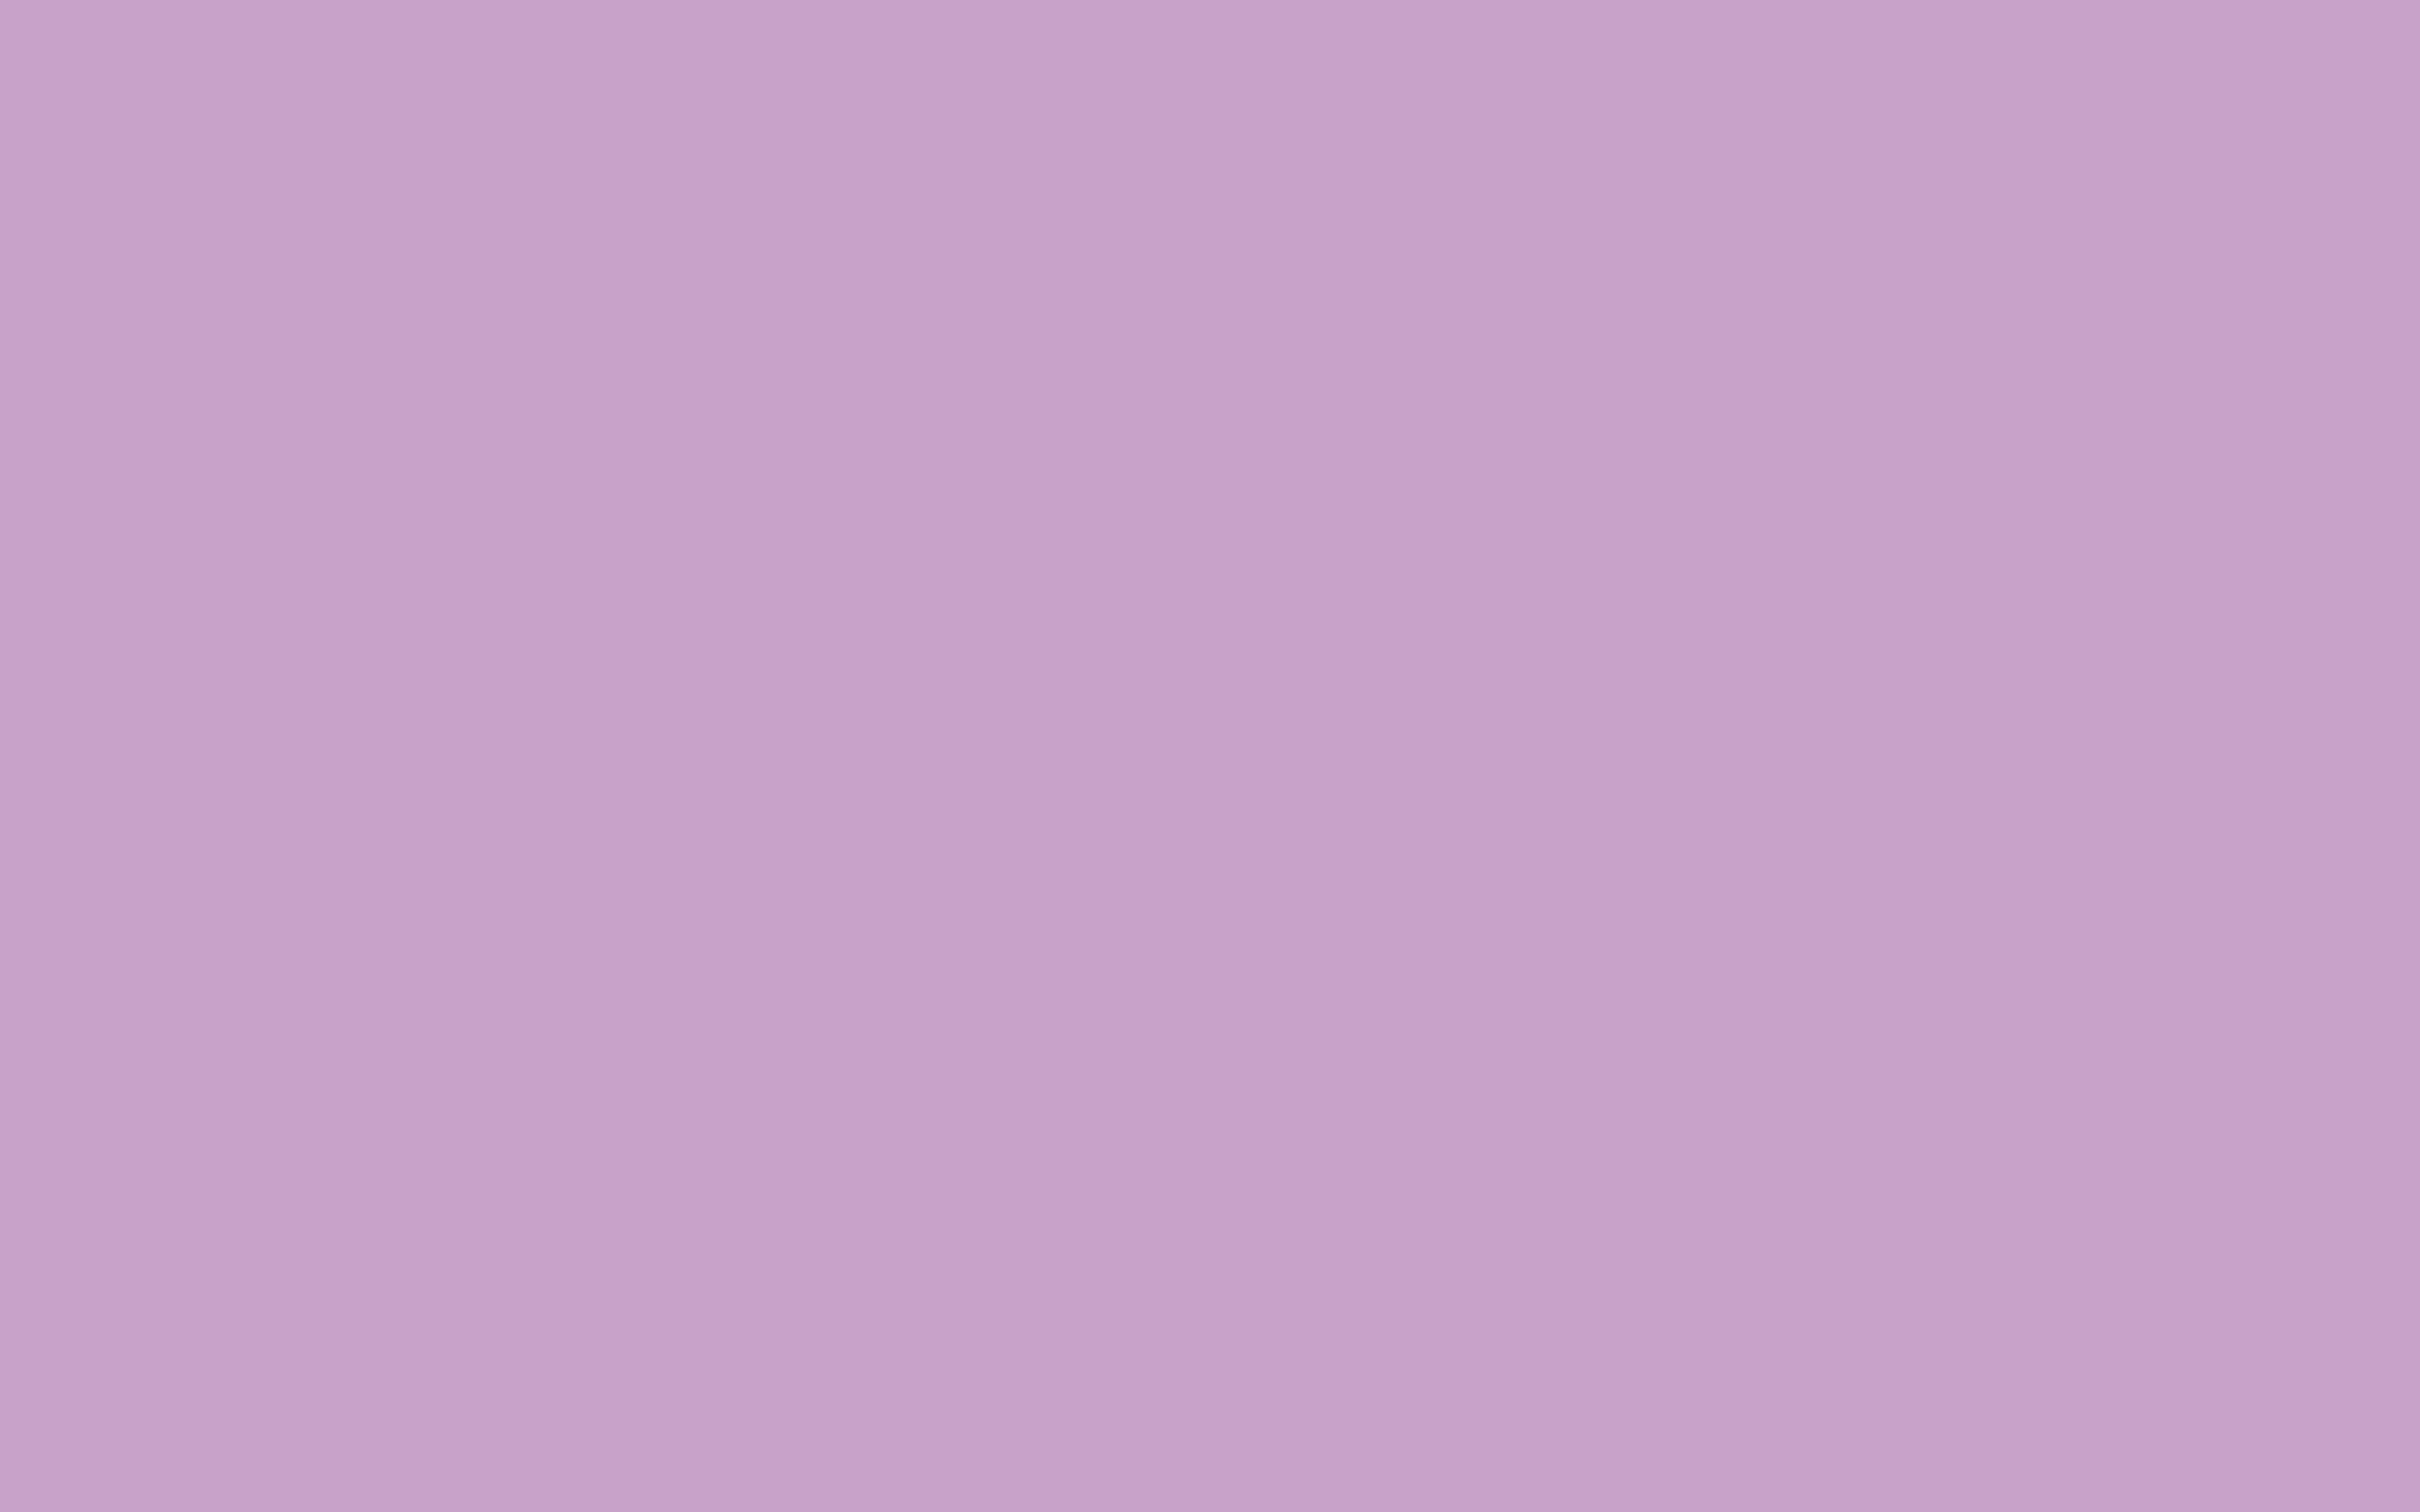 Лиловый софт ZB 821-2. Лиловый МДФ zb821-2. Светло фиолетовый. Однотонные цвета.